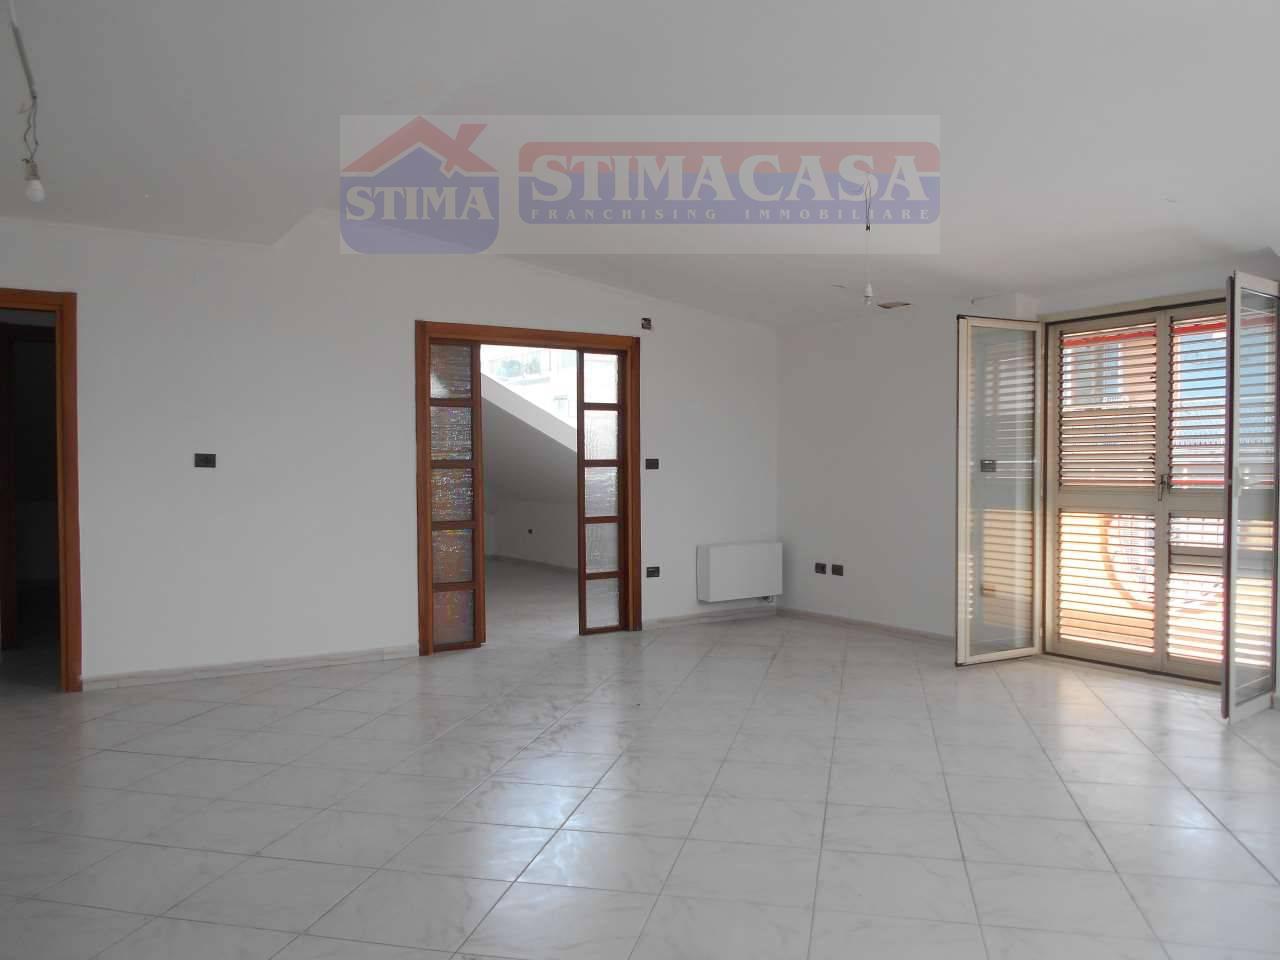 Appartamento in vendita a Cardito, 4 locali, prezzo € 160.000 | PortaleAgenzieImmobiliari.it